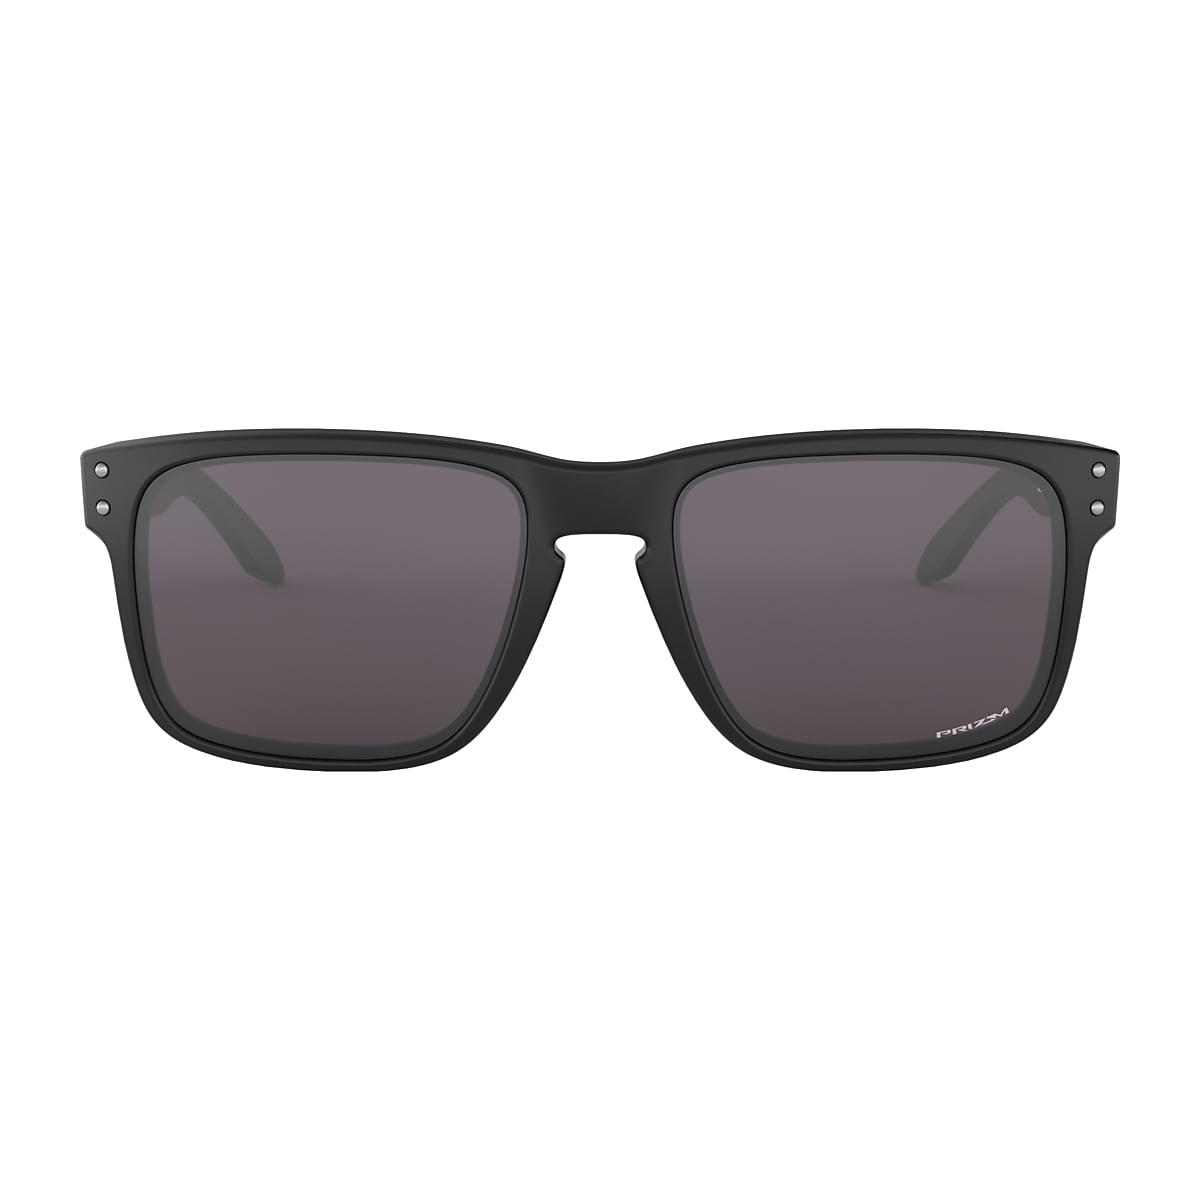 Holbrook™ Prizm Grey Lenses, Matte Black Frame Sunglasses | Oakley® US